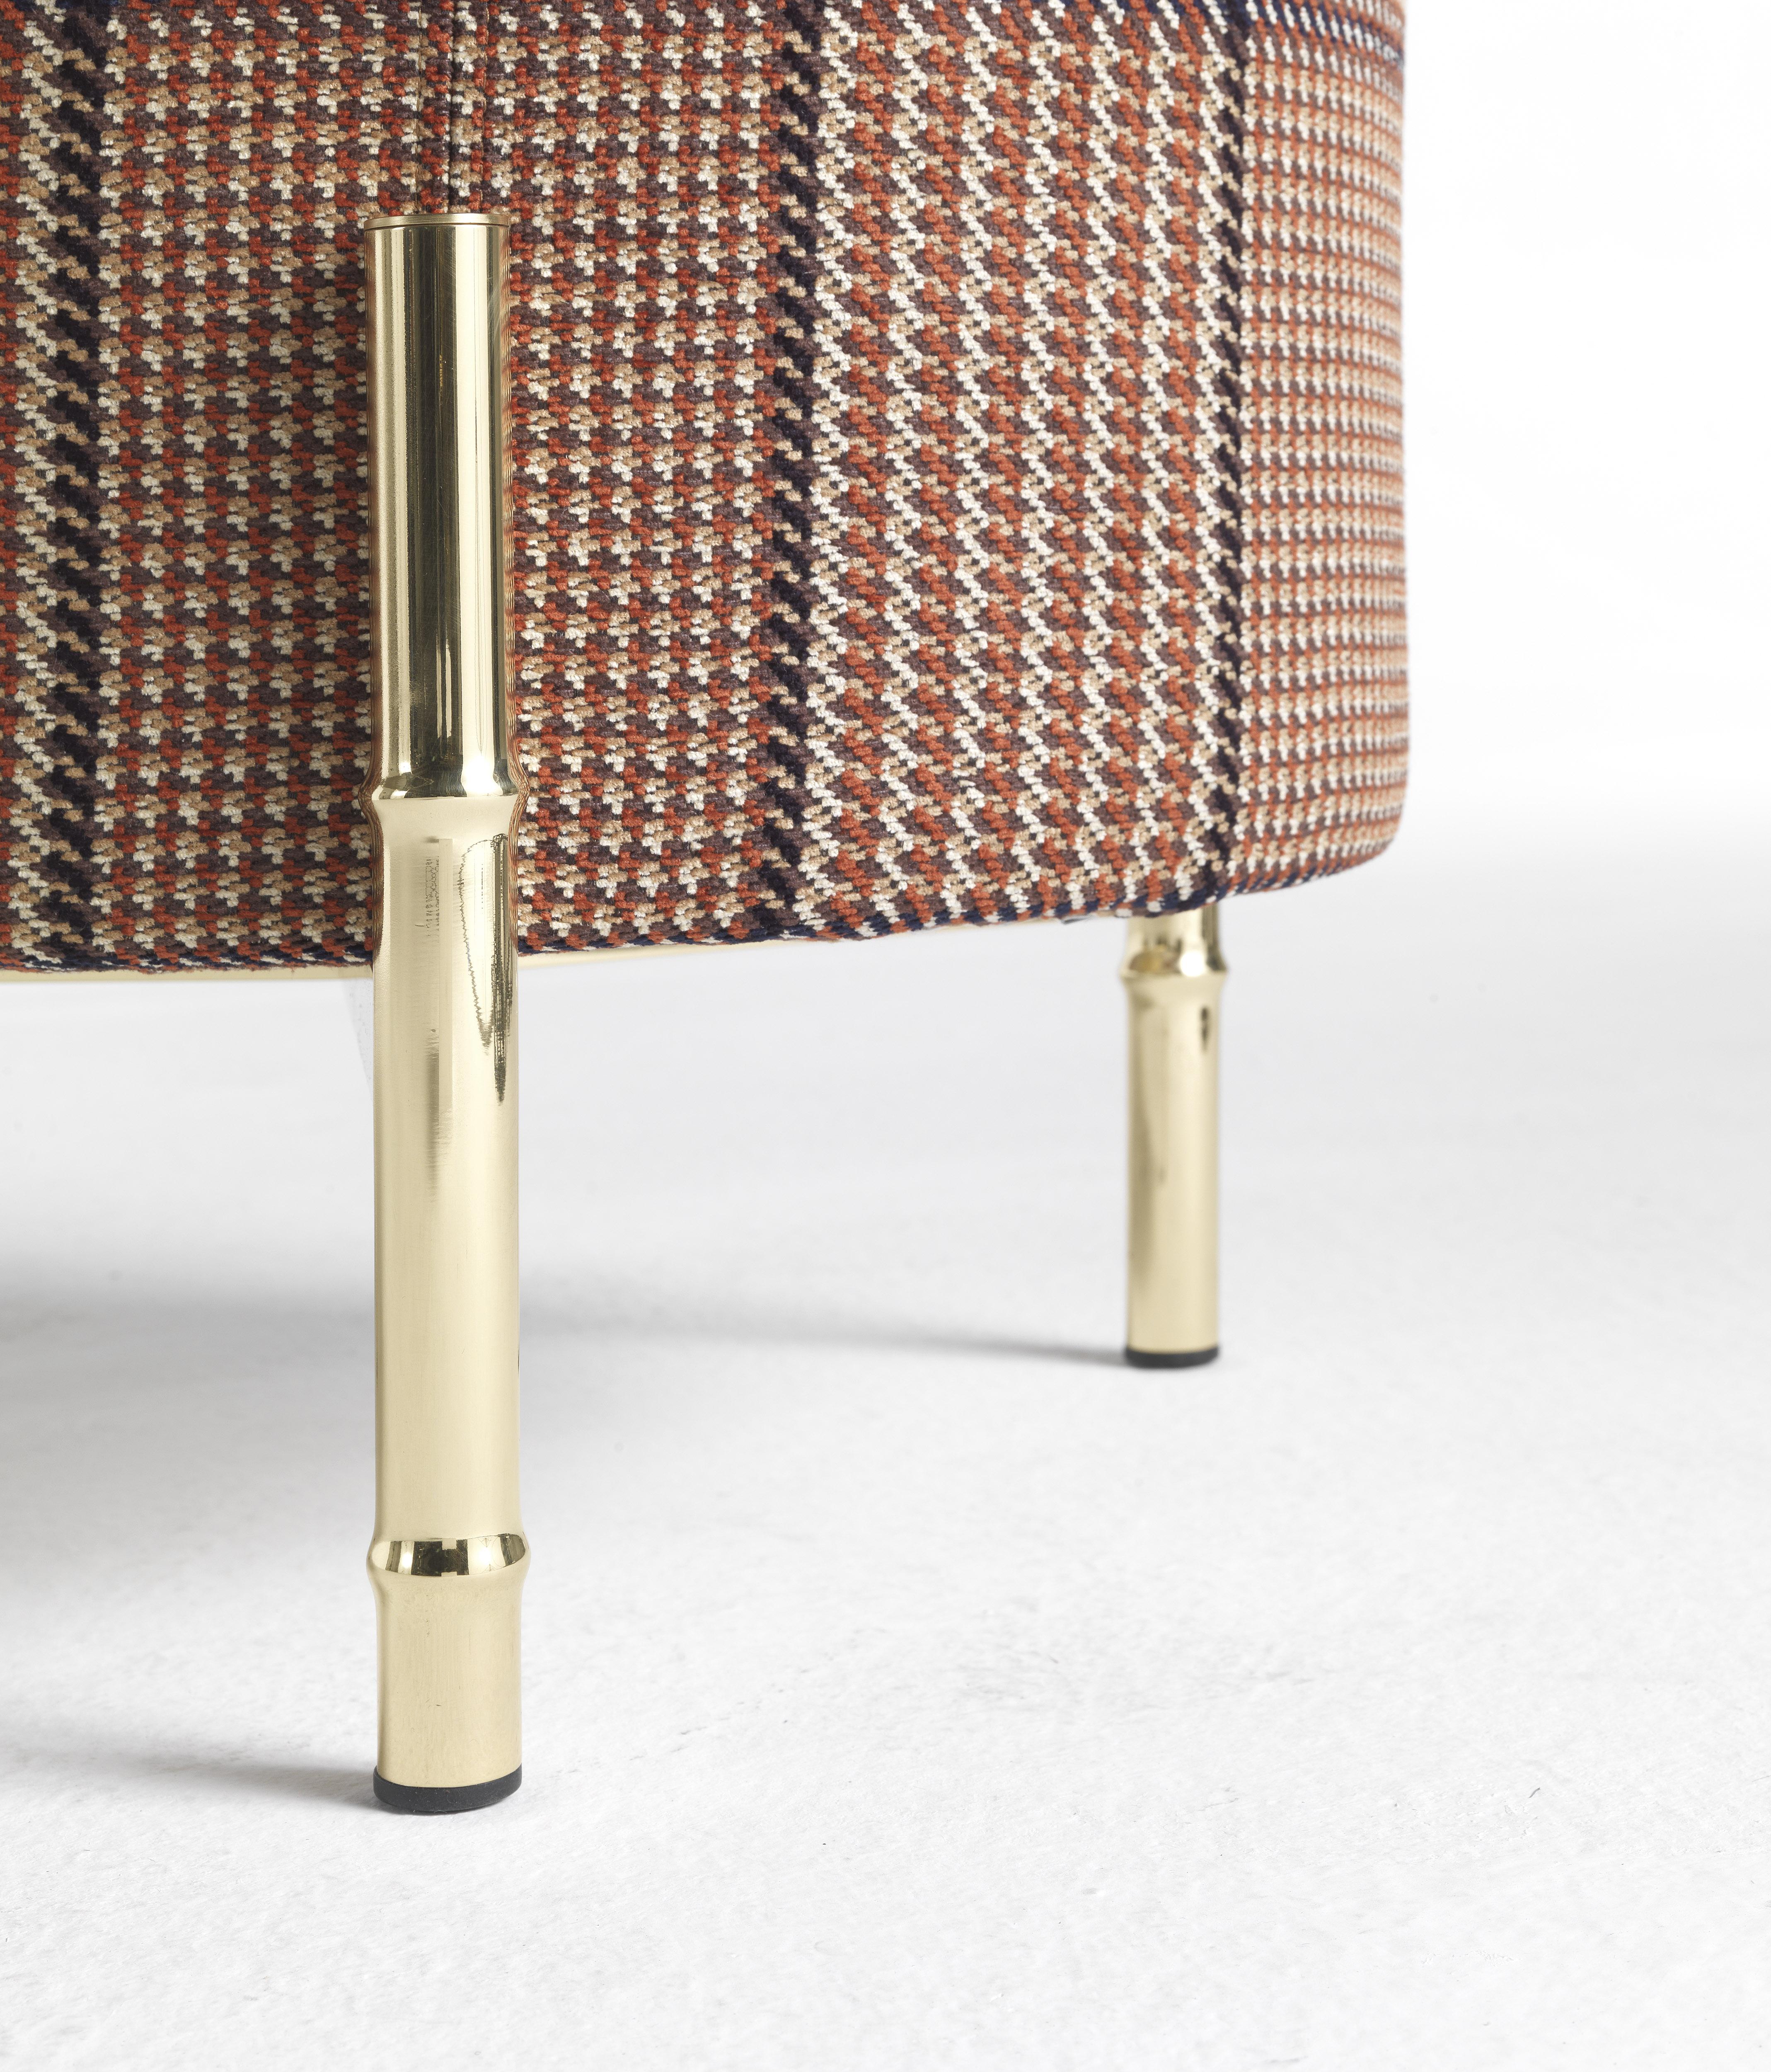 Der in zwei verschiedenen Formen und Größen erhältliche Samarcanda Pouf ist ein vielseitiges und funktionelles Möbelstück, das sich in jede Umgebung einfügt. Die Beine aus Bambusrohren, natürliche Elemente, die in einer edlen Version neu